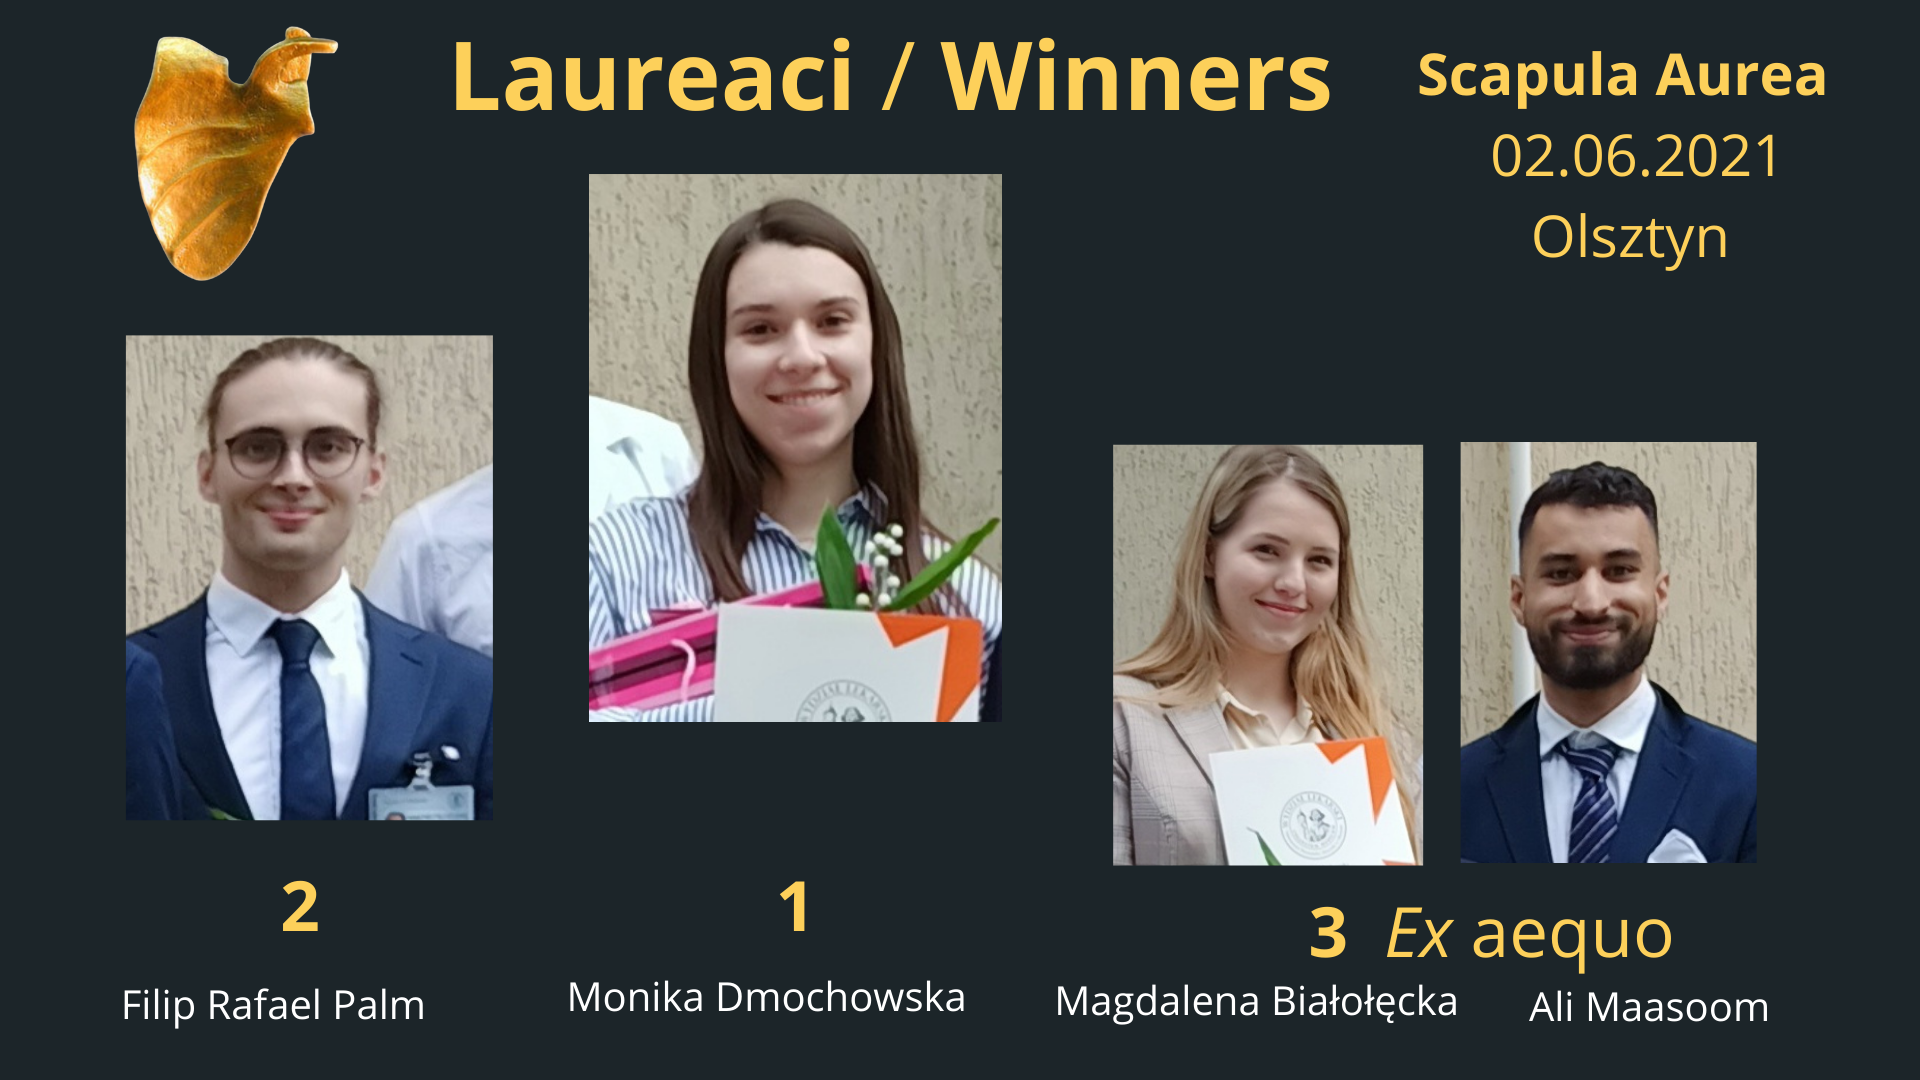 Winners of the Scapula Aurea 2021